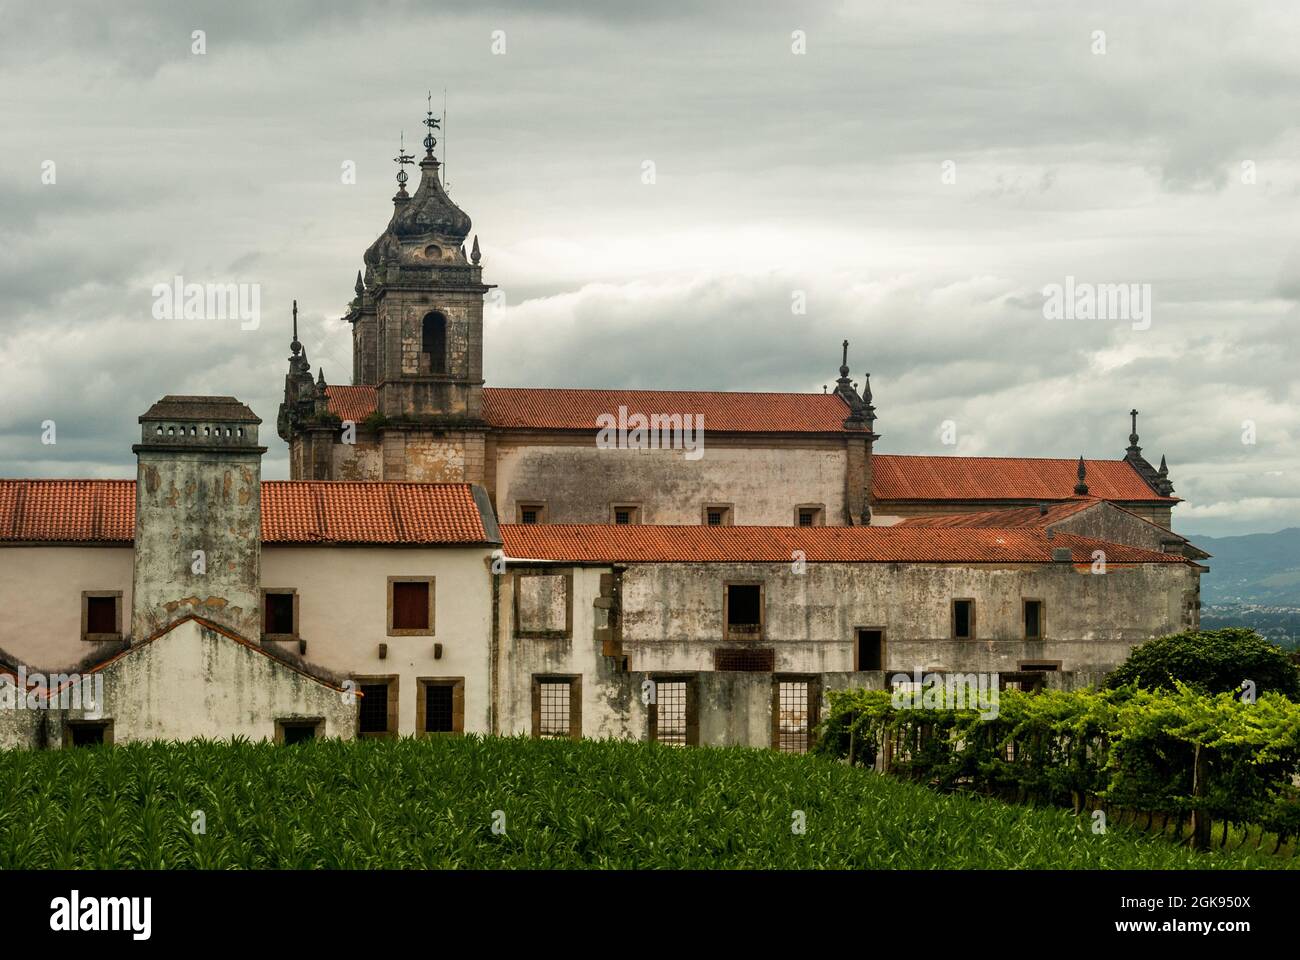 Seitenansicht des Klosters von Tibaes an einem bewölkten Tag, berühmter religiöser Ort der Region Minho - Braga, Portugal Stockfoto